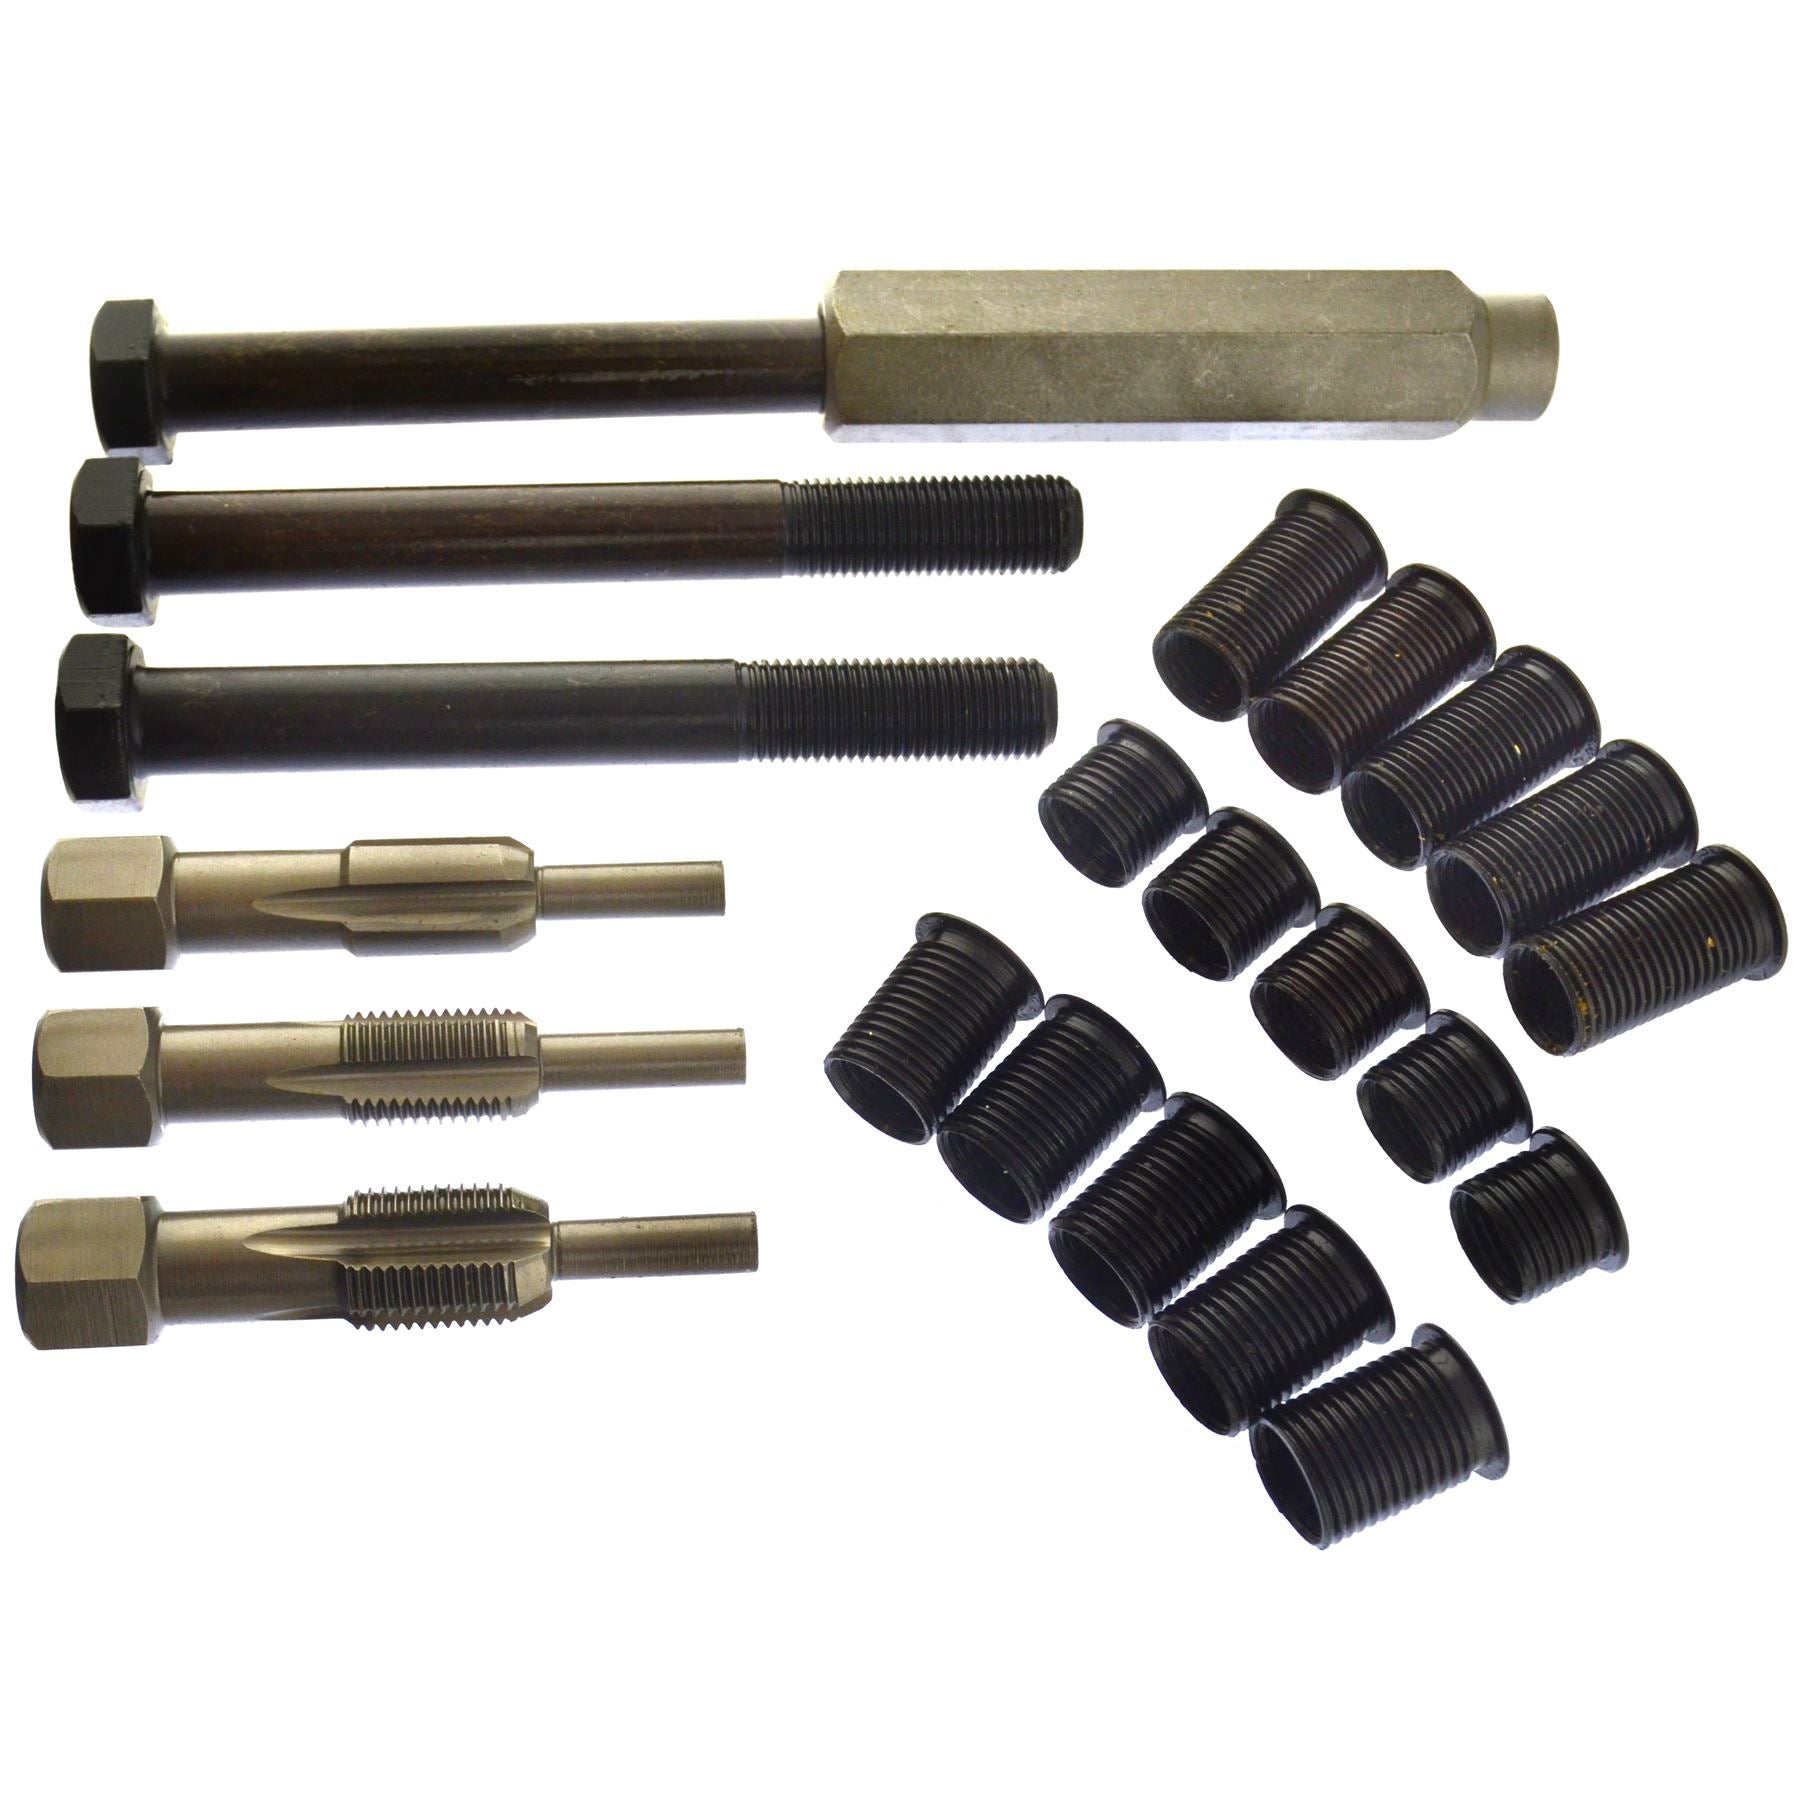 Glow Plug Cylinder Head Metric Thread Repair Restorer Tap Kit M12 x 1.25mm